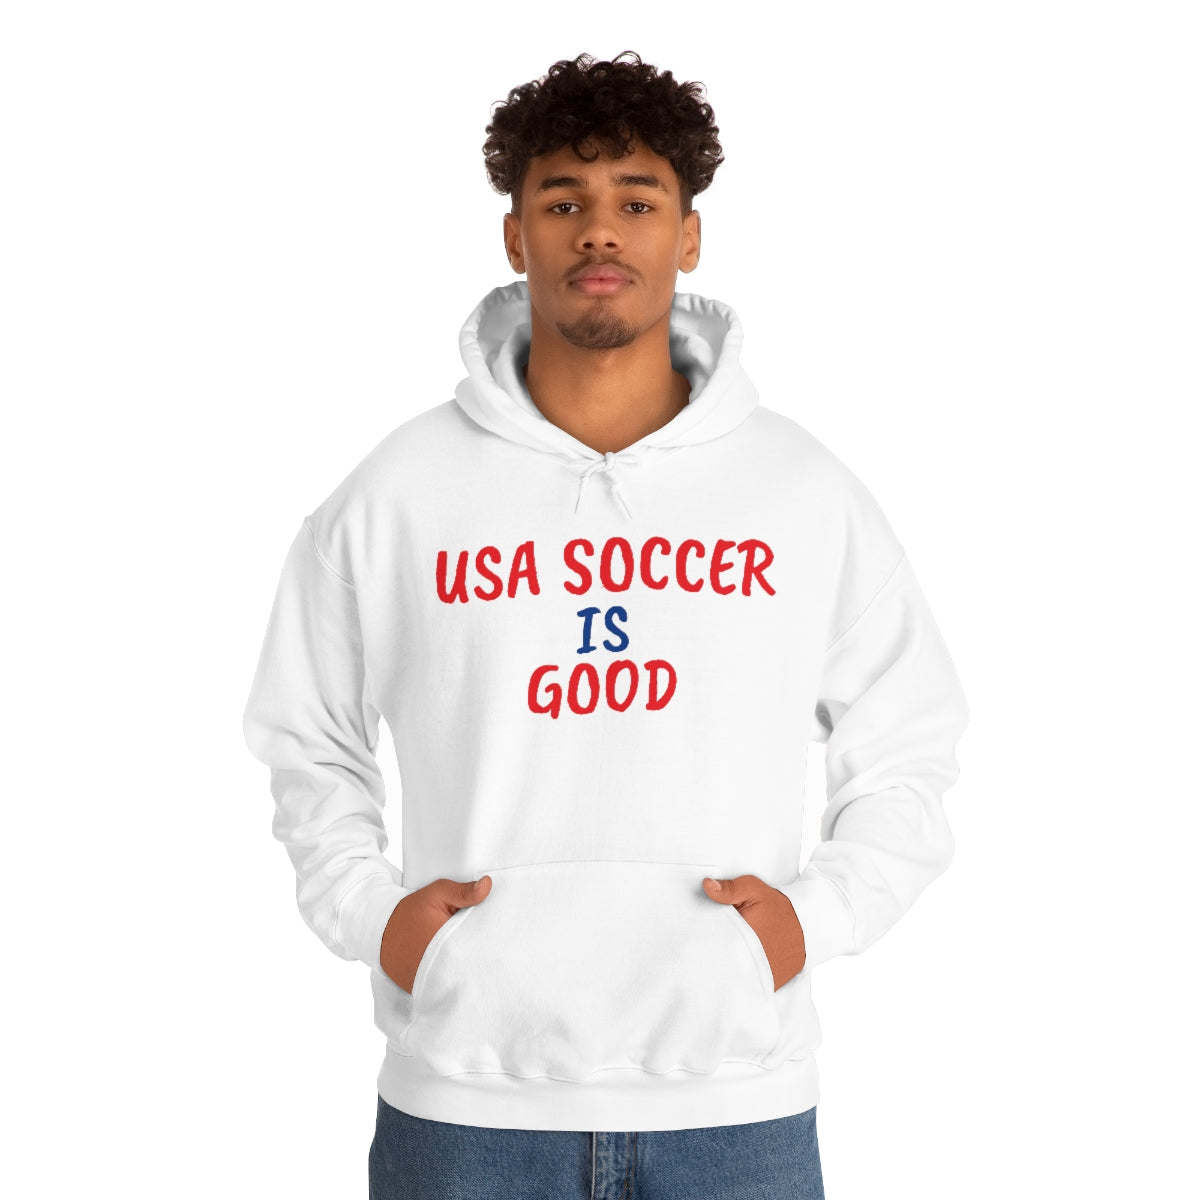 USA SOCCER IS GOOD Sweatshirt - IsGoodBrand